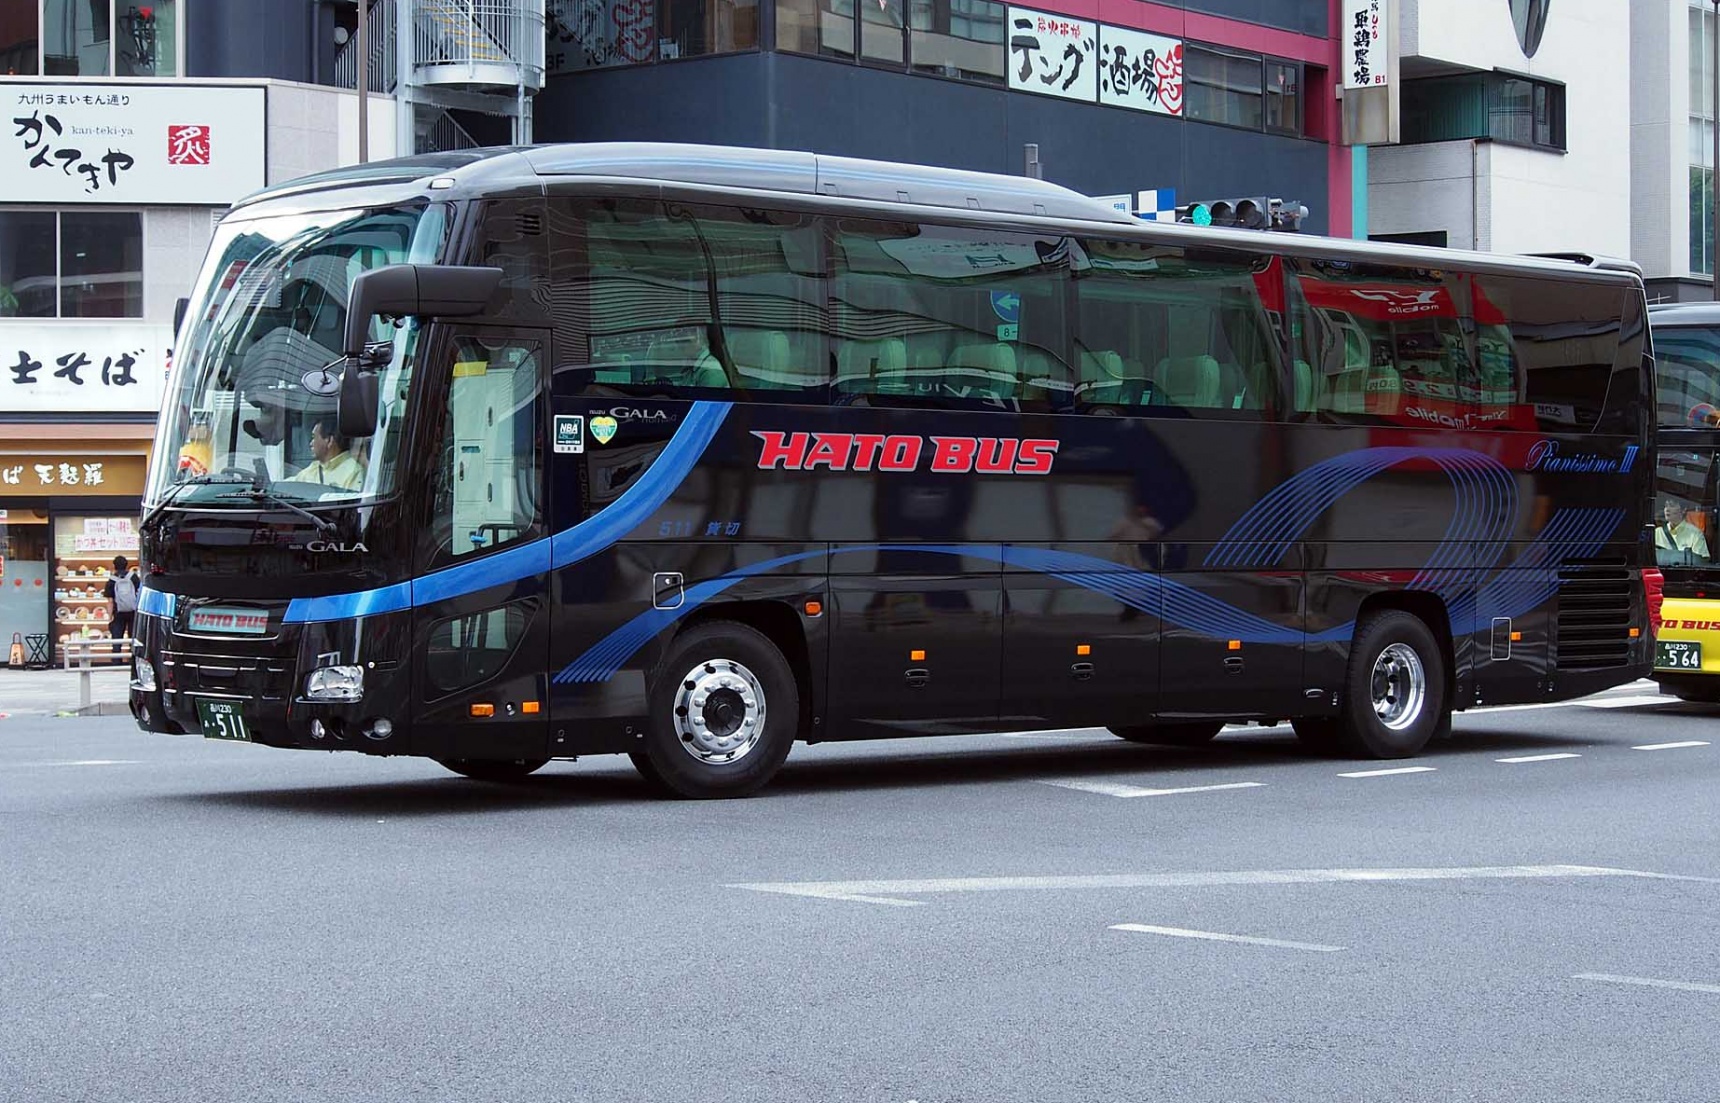 Head to Izu on this Luxurious Hato Bus Tour